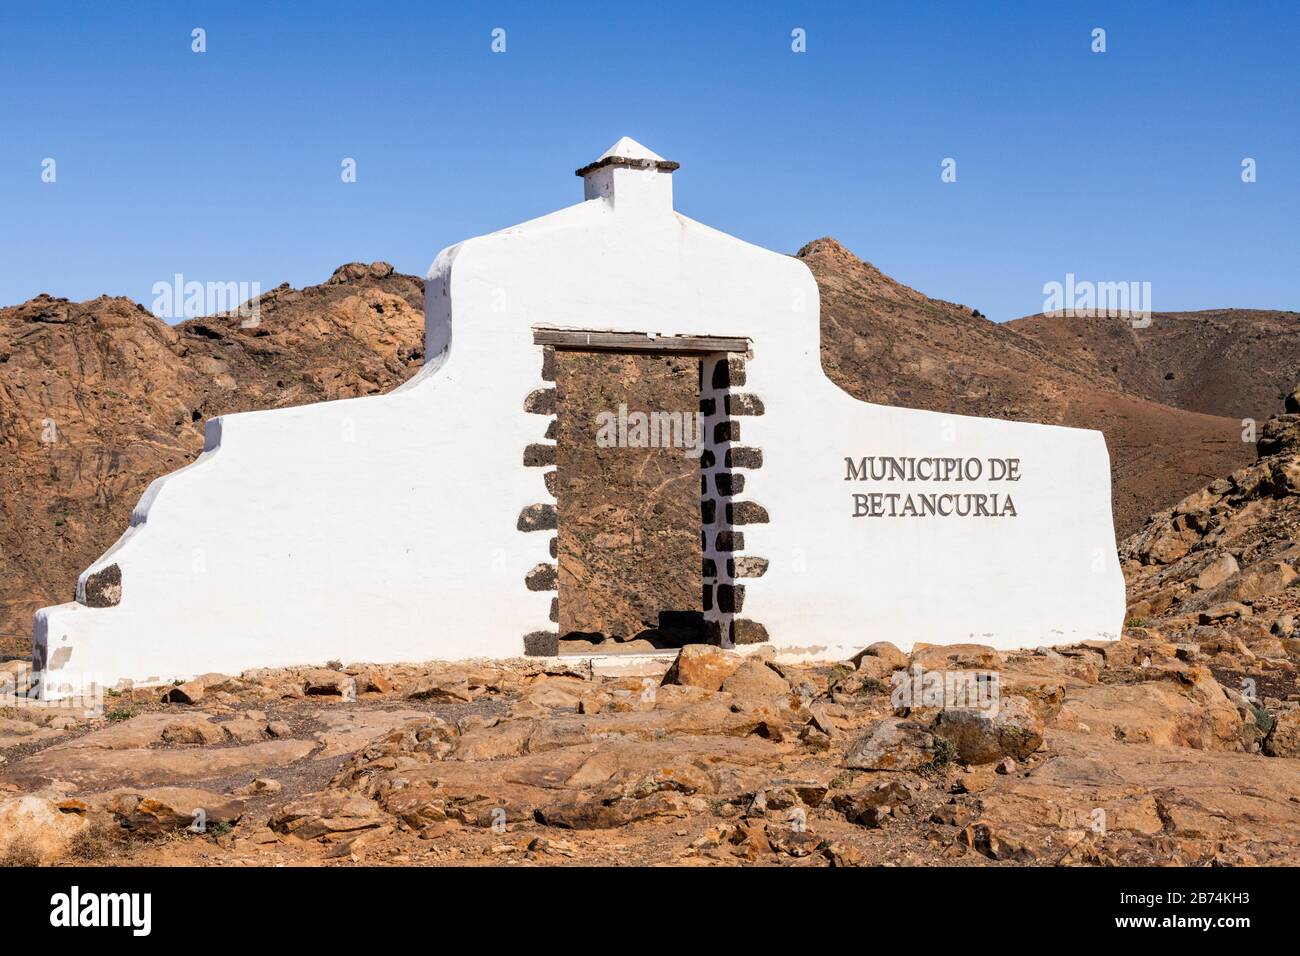 Ein Grenzmarker neben der Straße, der Besucher der Gemeinde Betancuria in Mirador del Risco de las Peñas auf Fuerteventura willkommen heißt Stockfoto